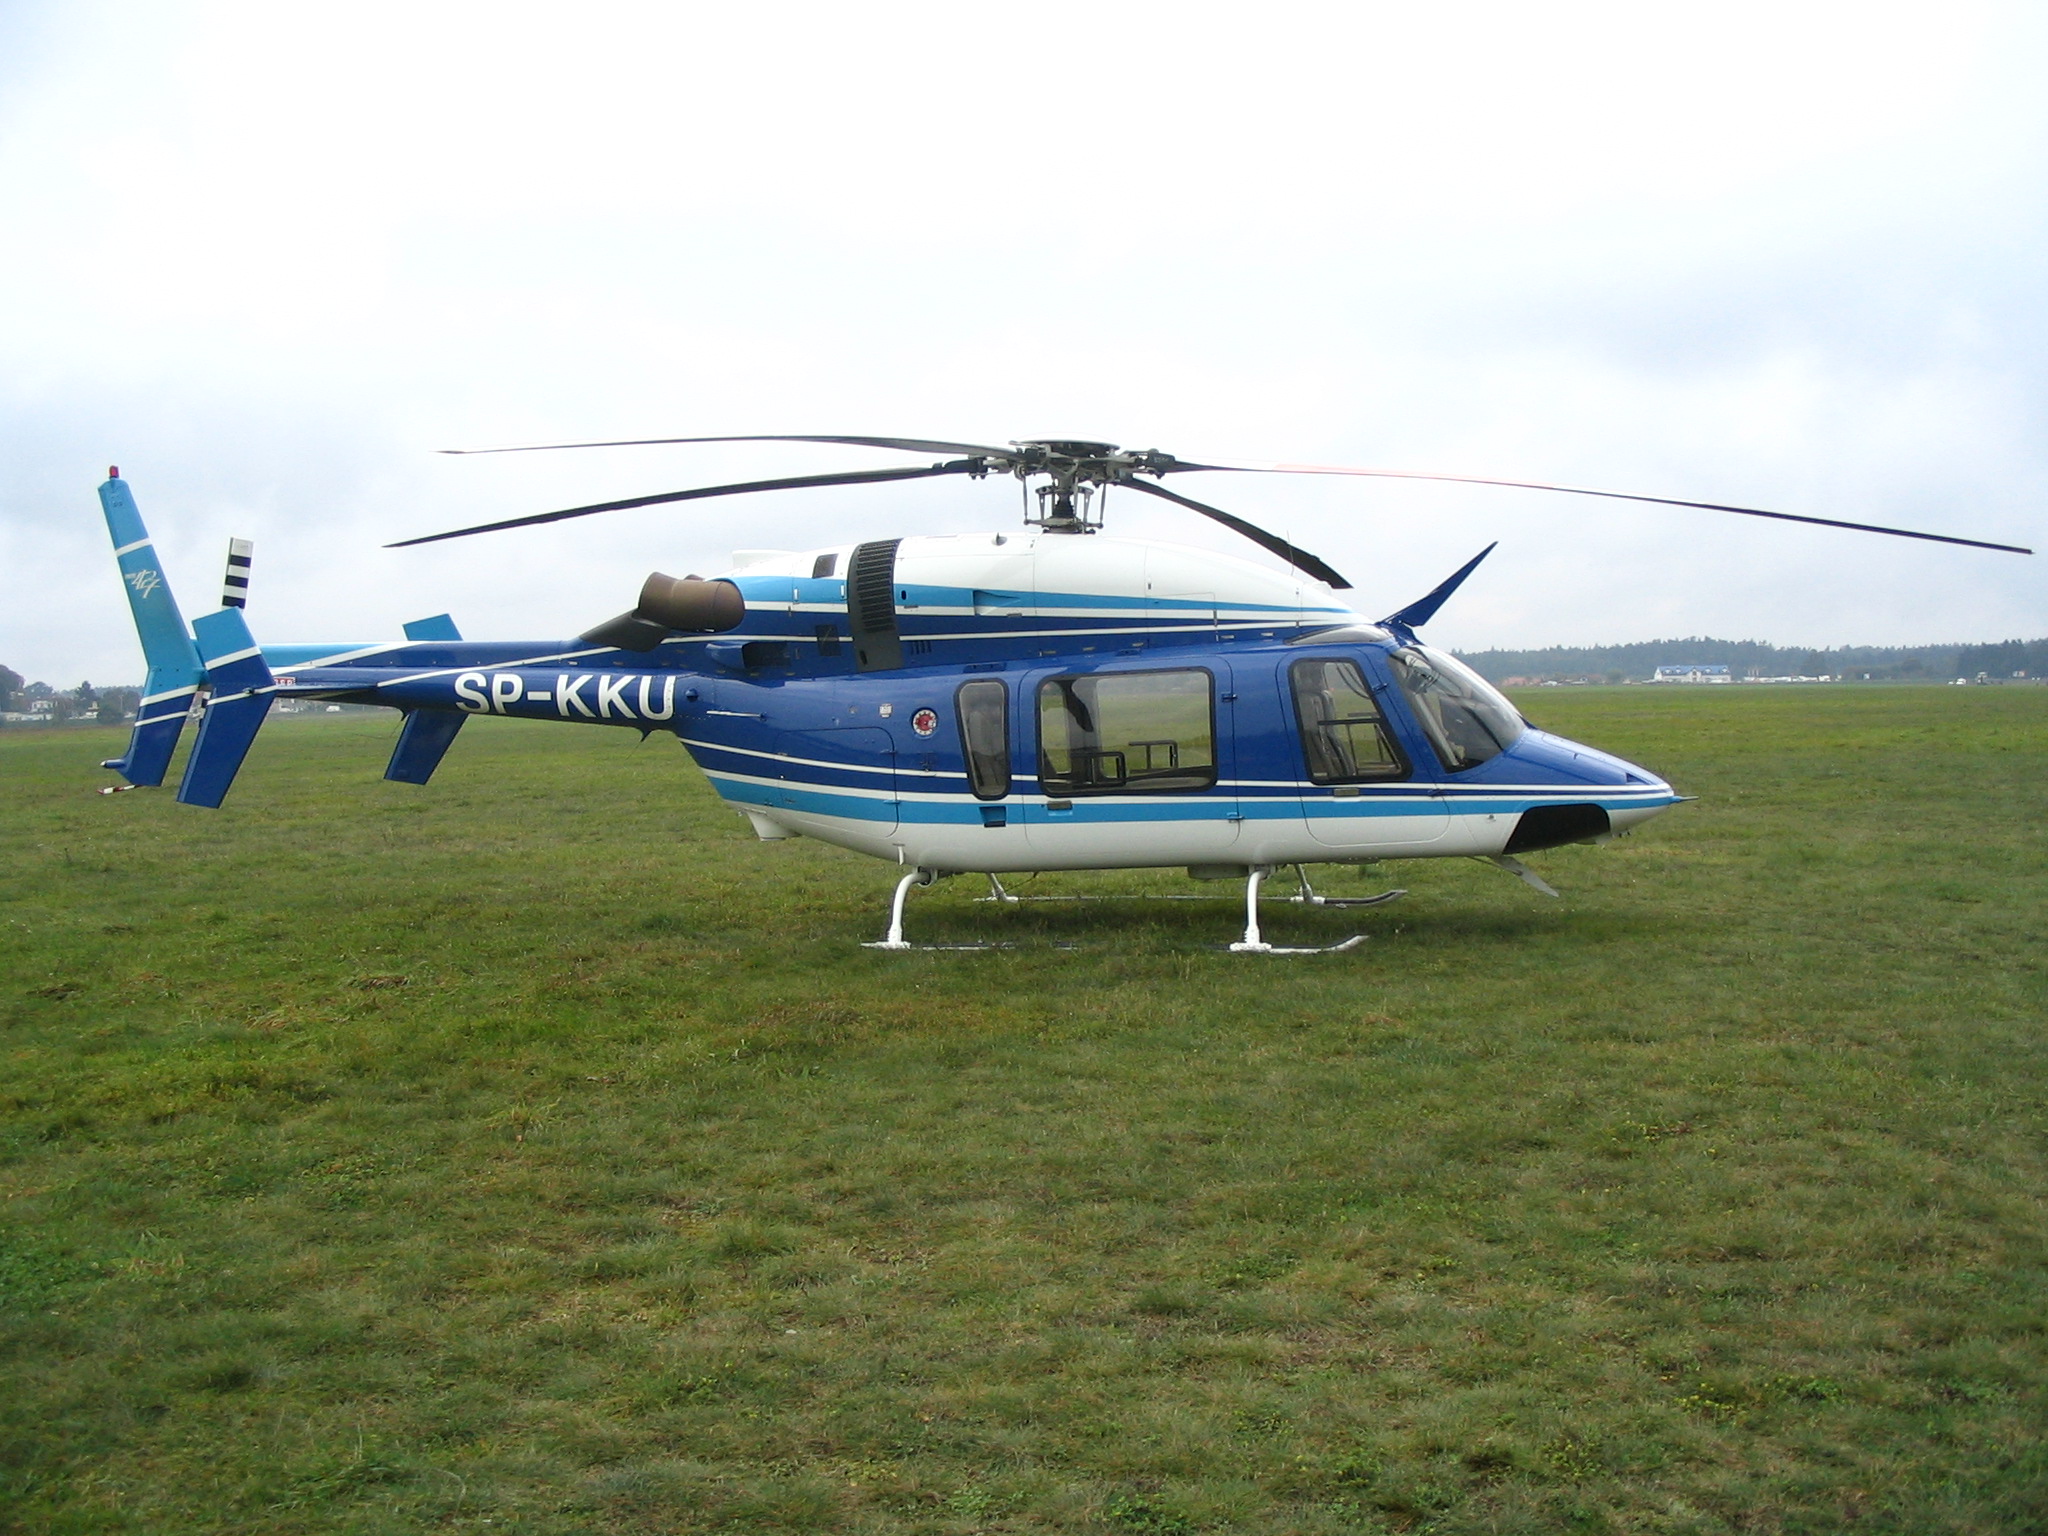 Bell 427 next